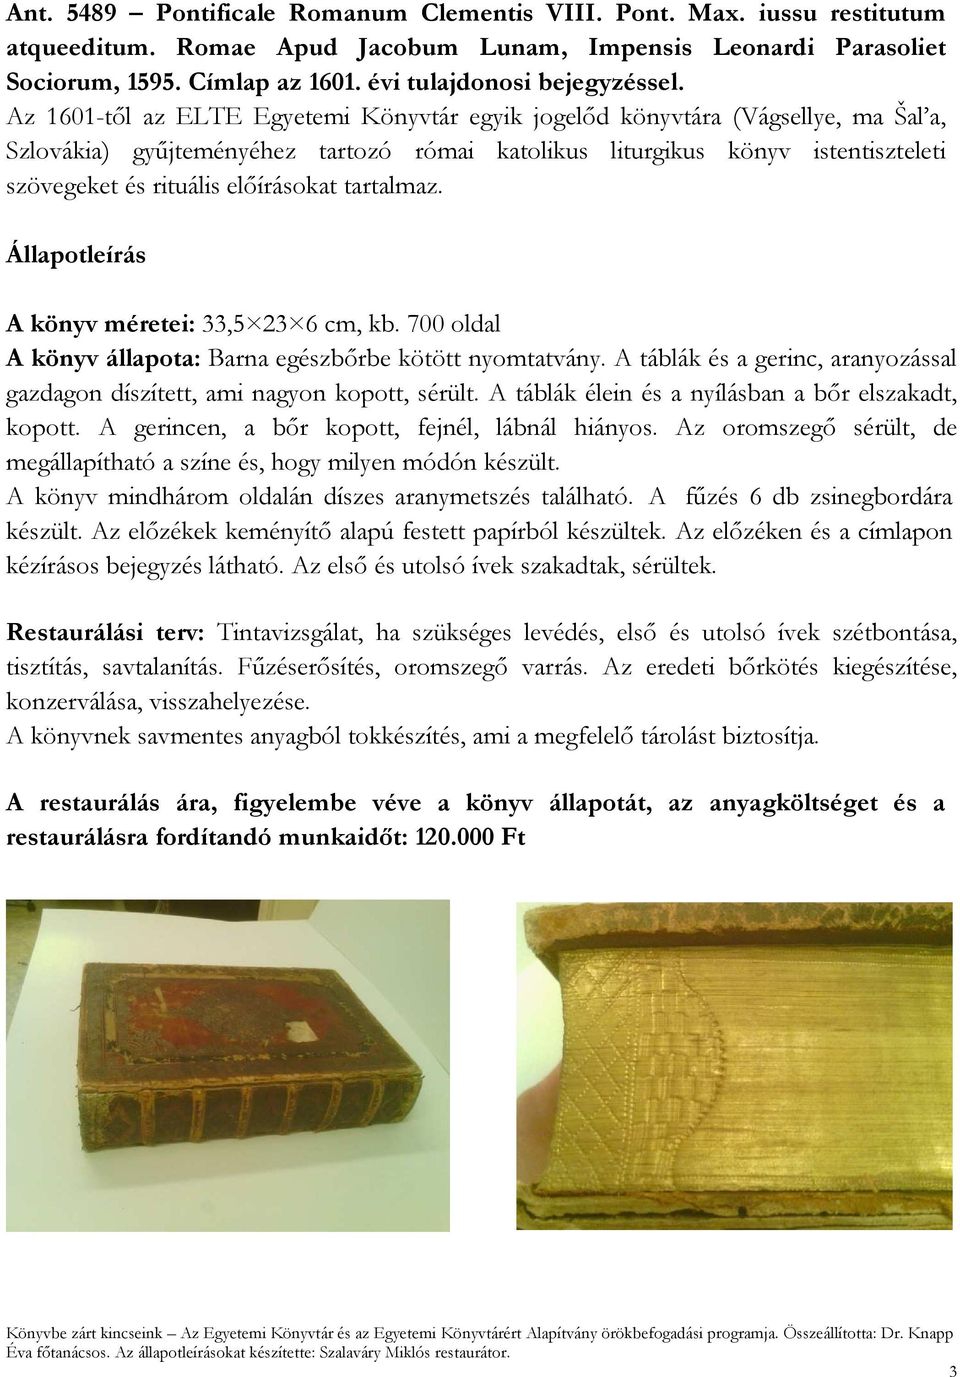 Az 1601-től az ELTE Egyetemi Könyvtár egyik jogelőd könyvtára (Vágsellye, ma Šal a, Szlovákia) gyűjteményéhez tartozó római katolikus liturgikus könyv istentiszteleti szövegeket és rituális